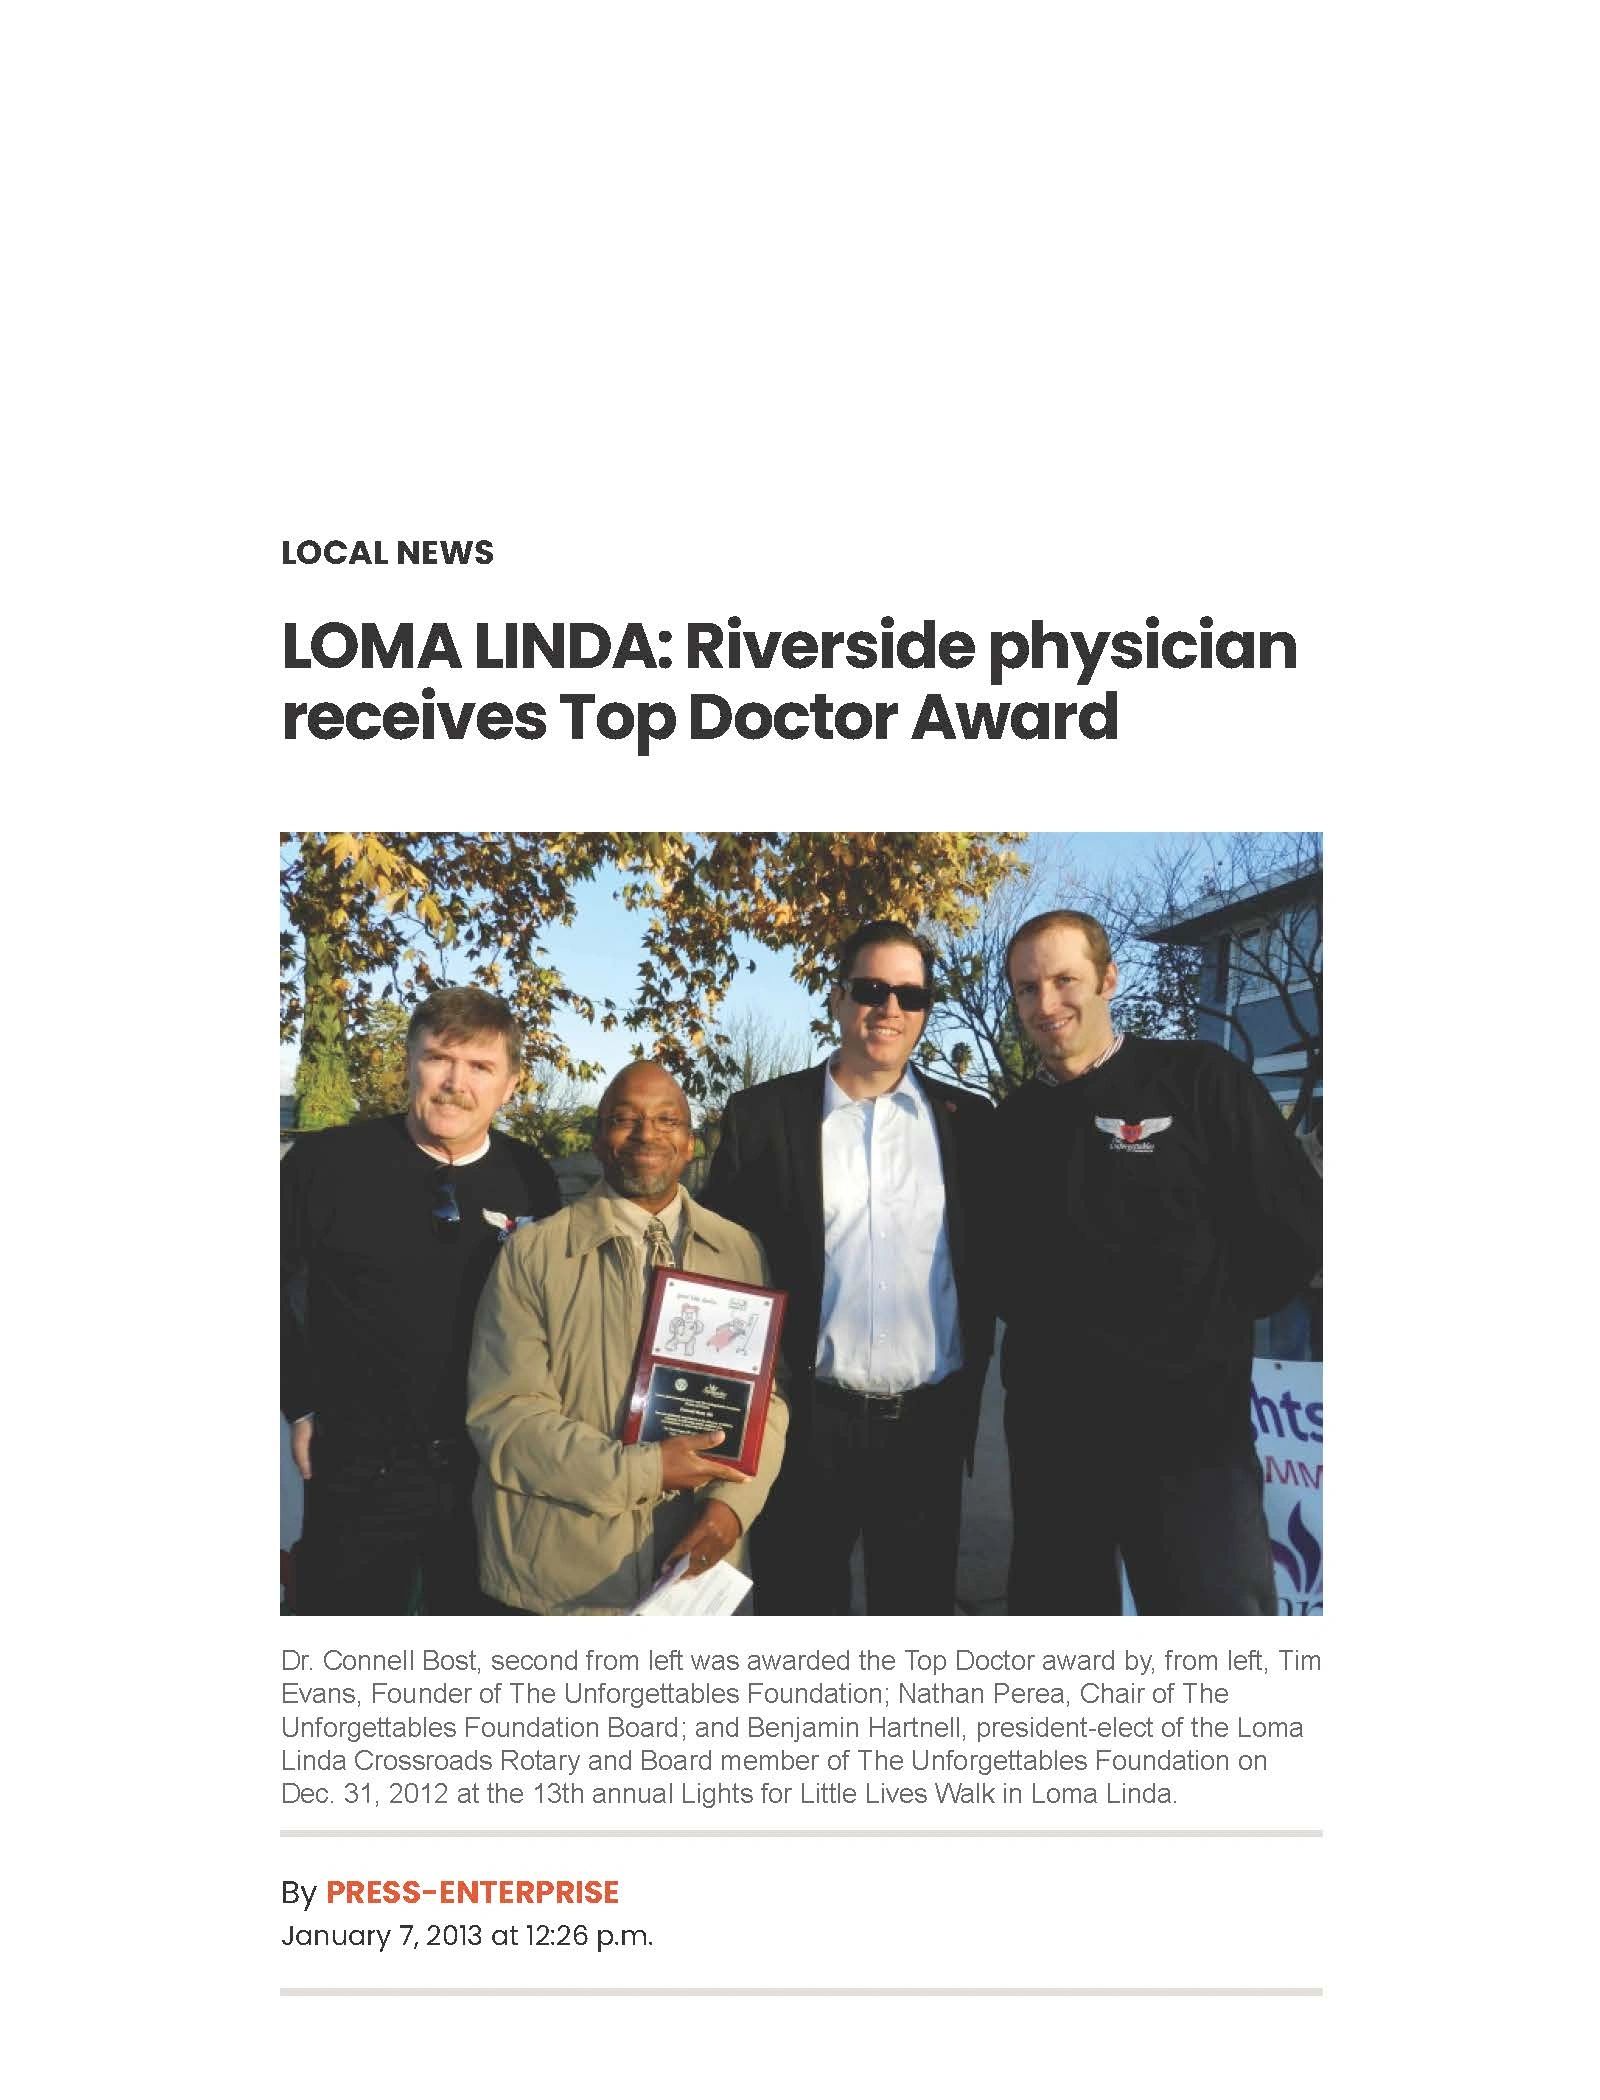 Loma Linda Attorney Nathan Perea presenting award to doctor at Loma Linda